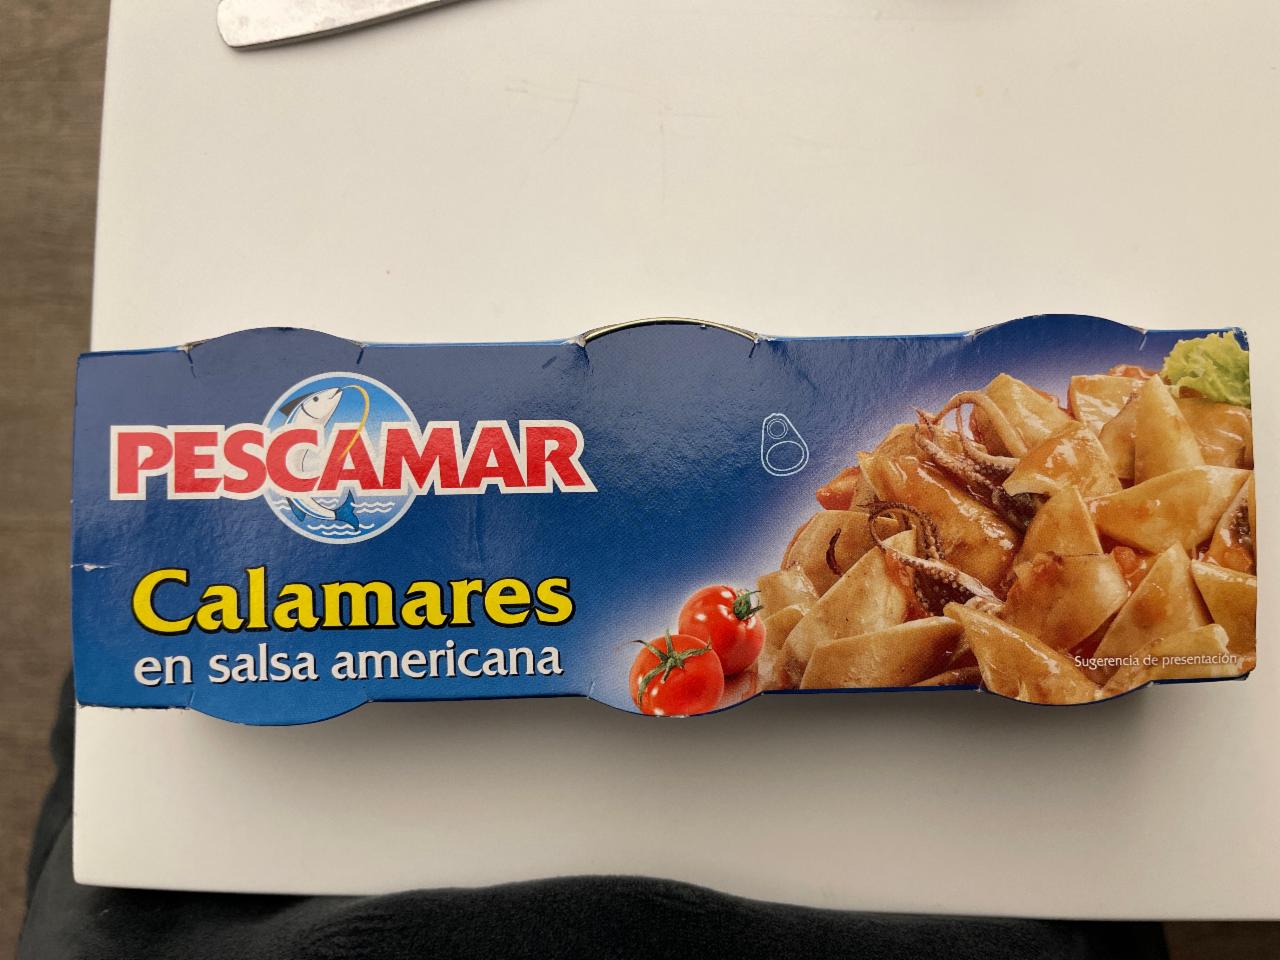 Фото - кальмары в американской сальсе консервированные Pescamar